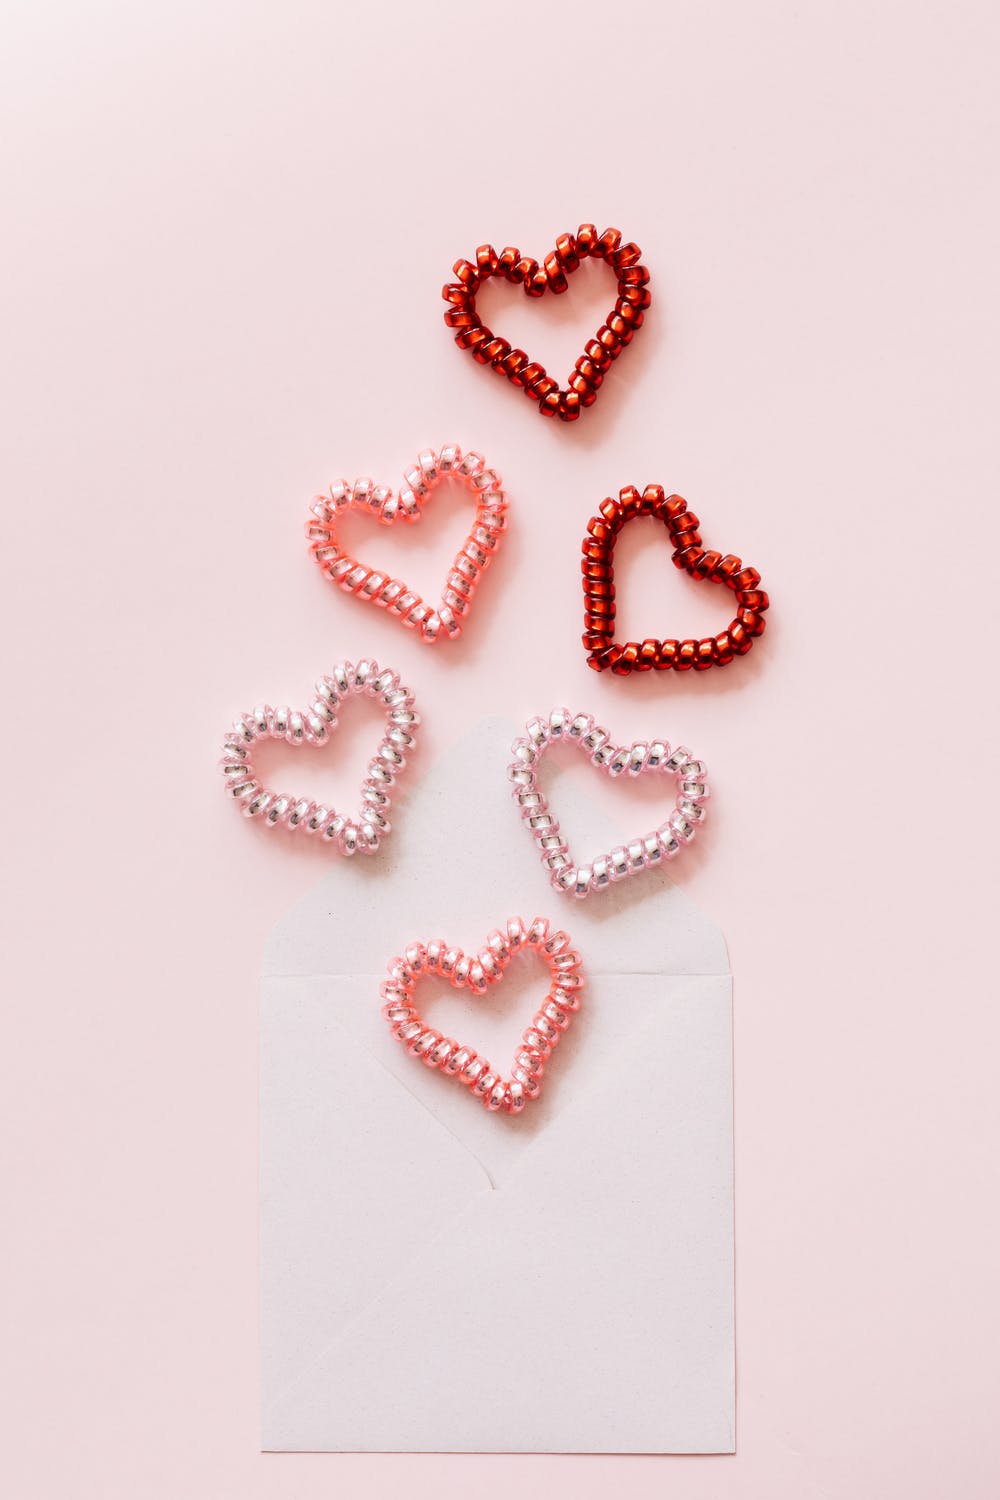 Aesthetic Valentines Day Wallpaper & Background - SlidesCorner